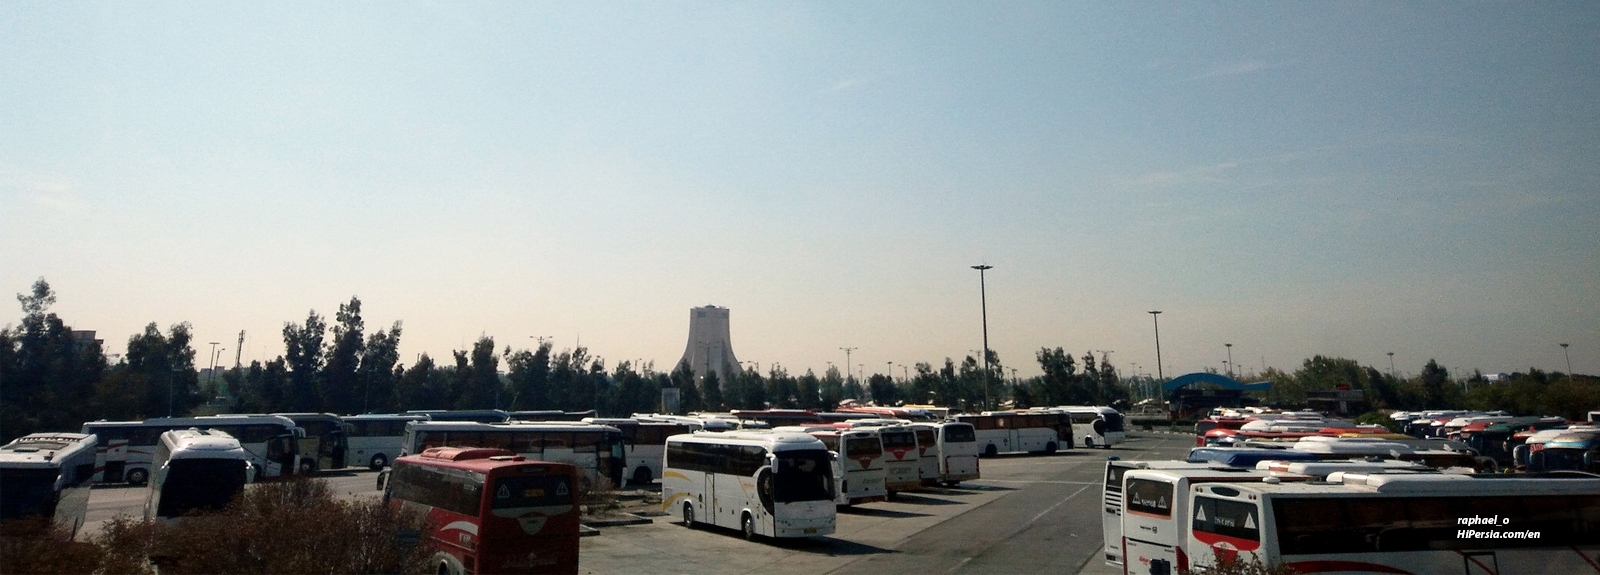 Tehran bus company